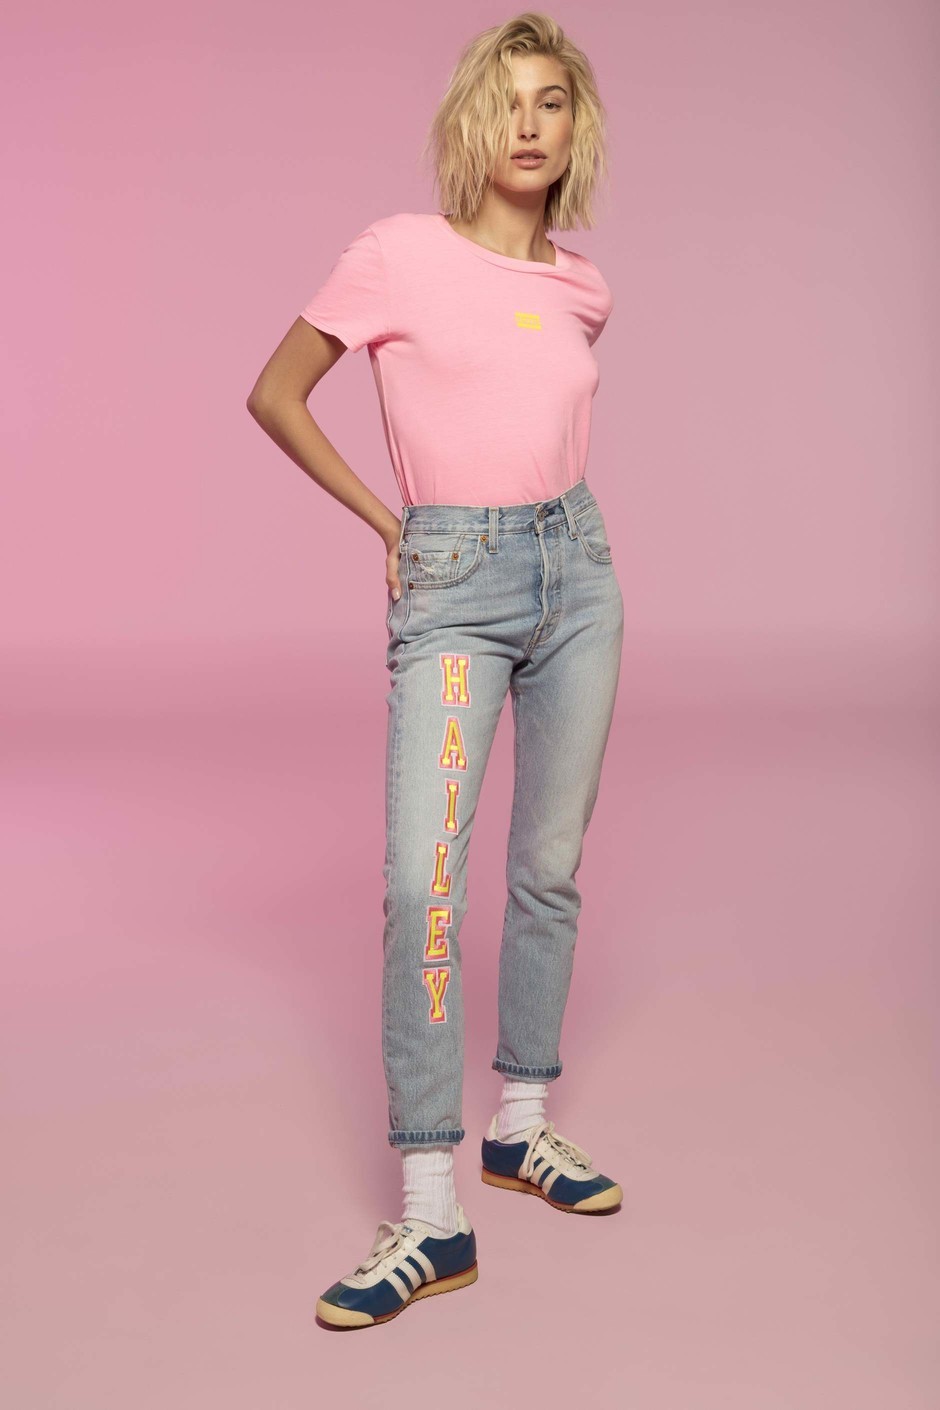 Хейли Бибер - новое лицо культовой модели джинсов Levi’s 501